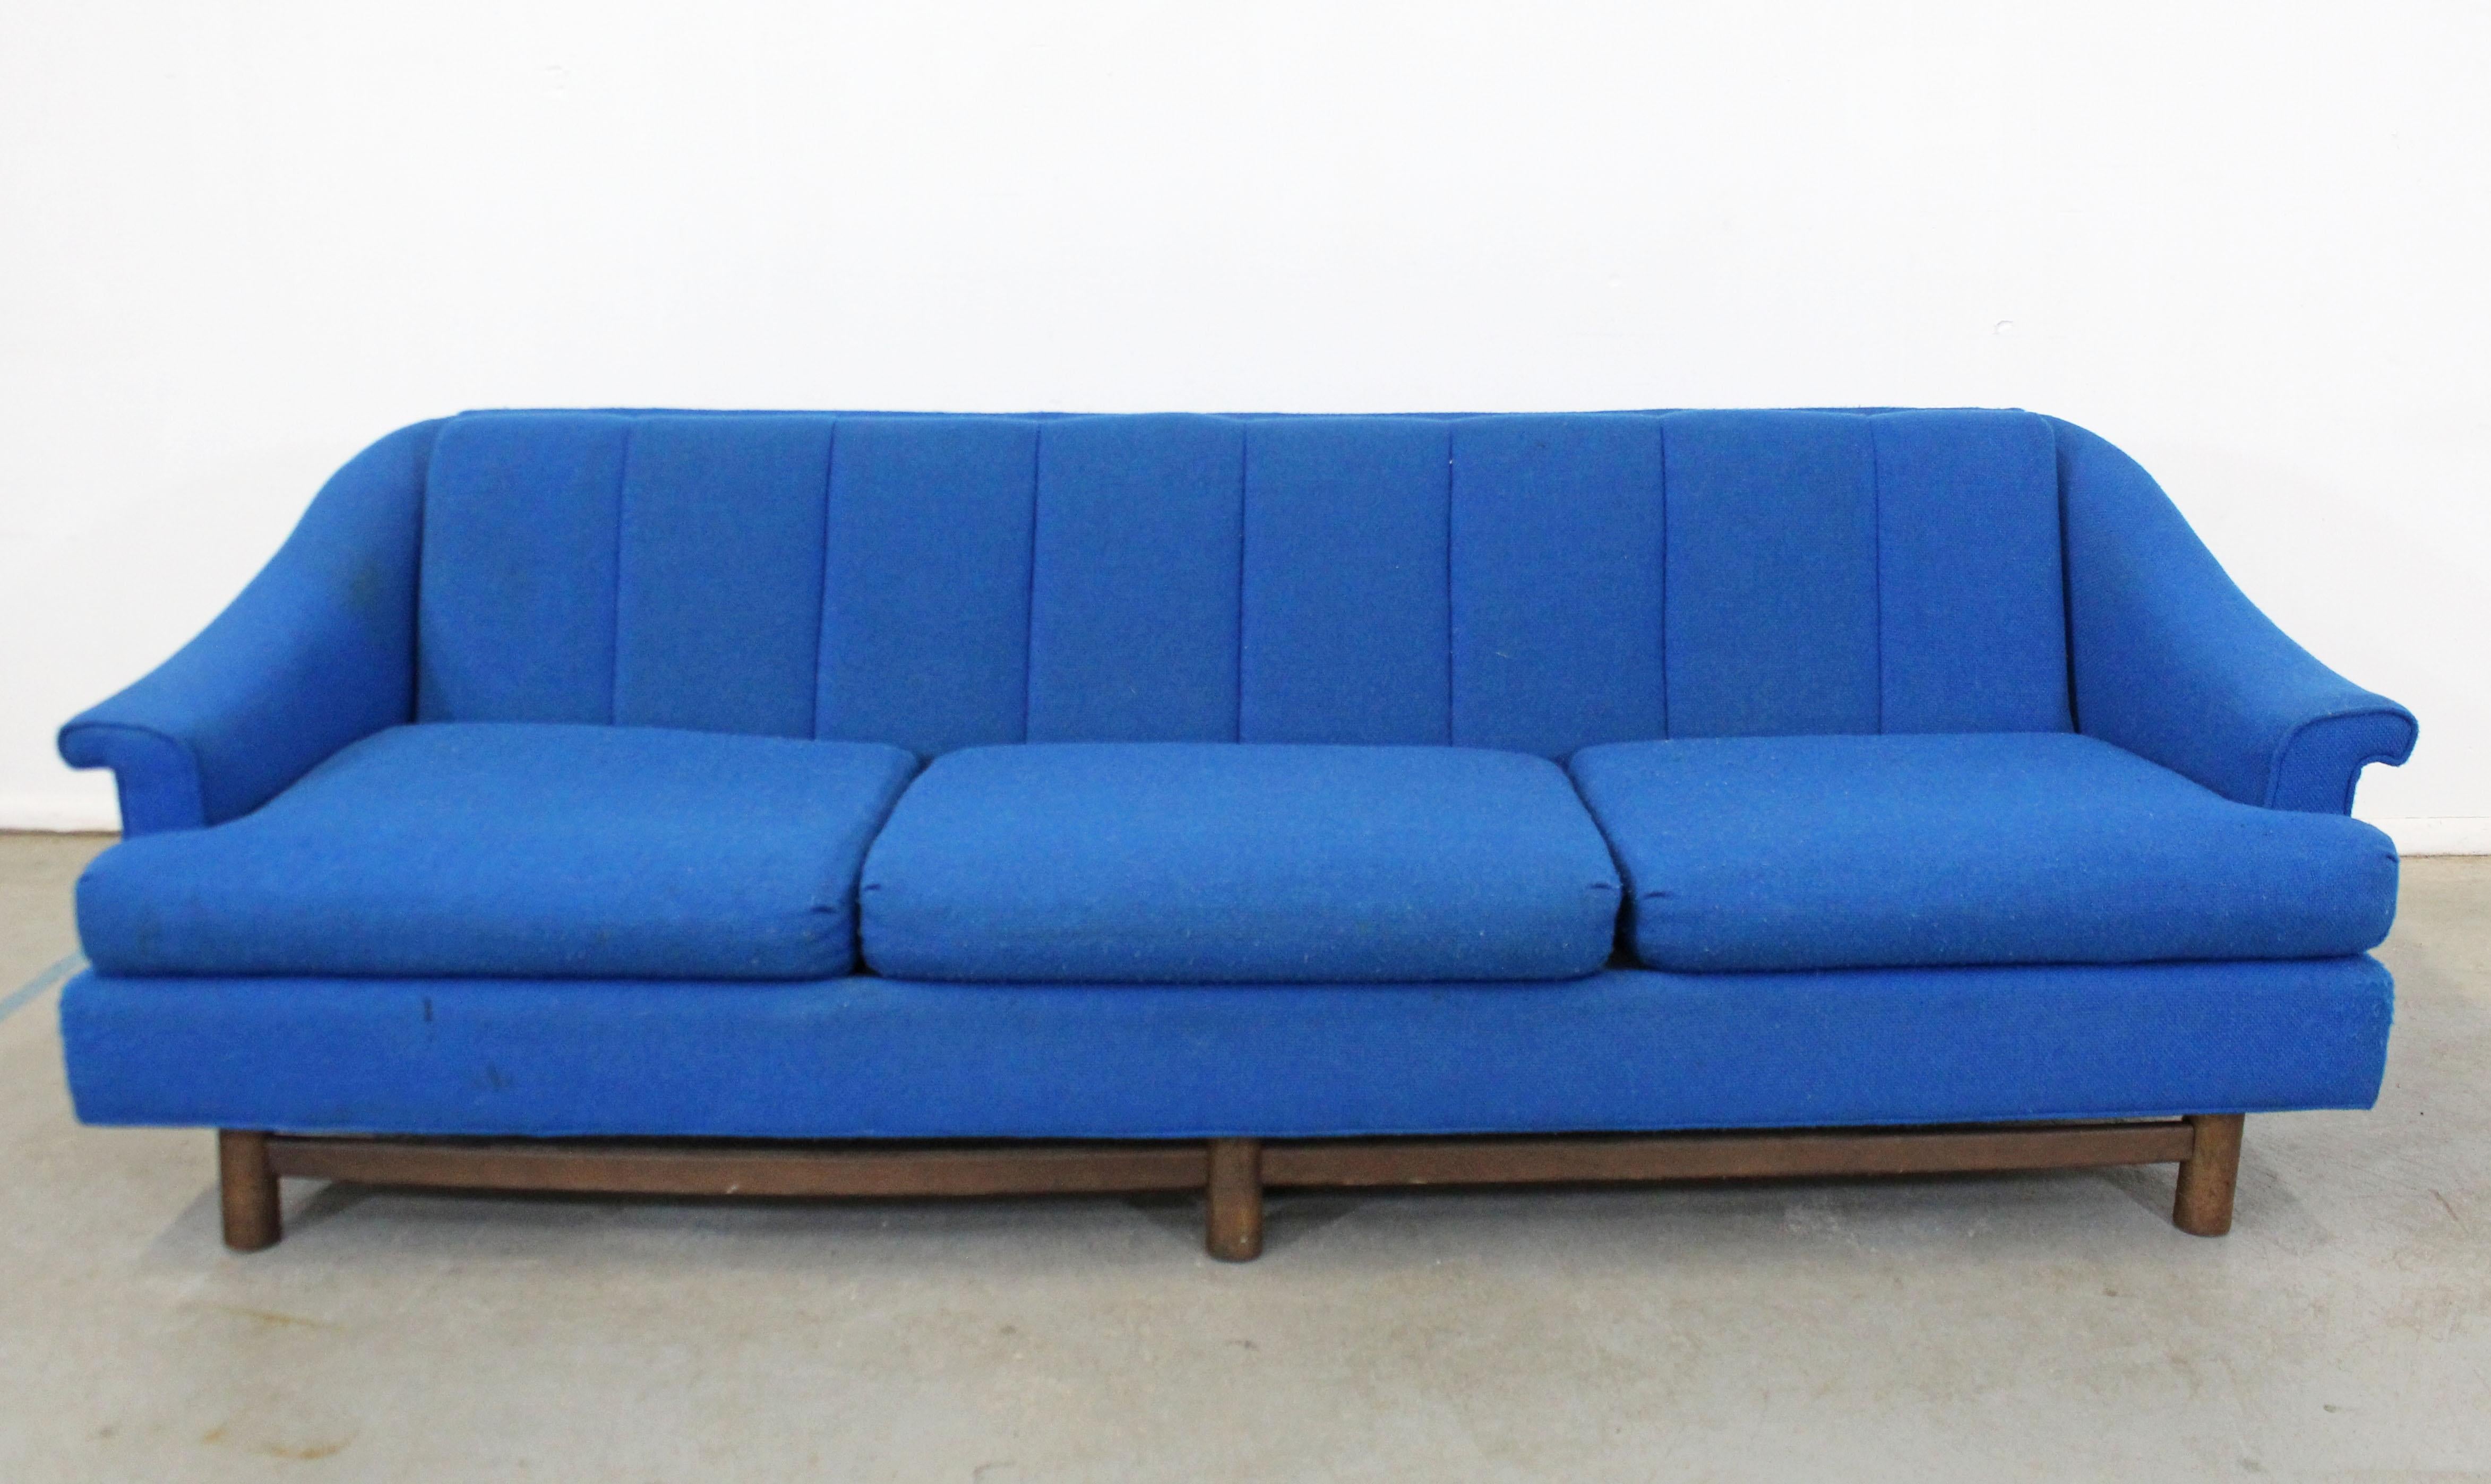 Angeboten wird ein Vintage Mid-Century Modern Sofa auf einem Holzsockel mit drei Sitzkissen. Die Polsterung ist in gutem Zustand, muss aber neu gepolstert werden. Das Sofa ist strukturell solide mit einigen Kratzern auf der Oberfläche des Holzes.